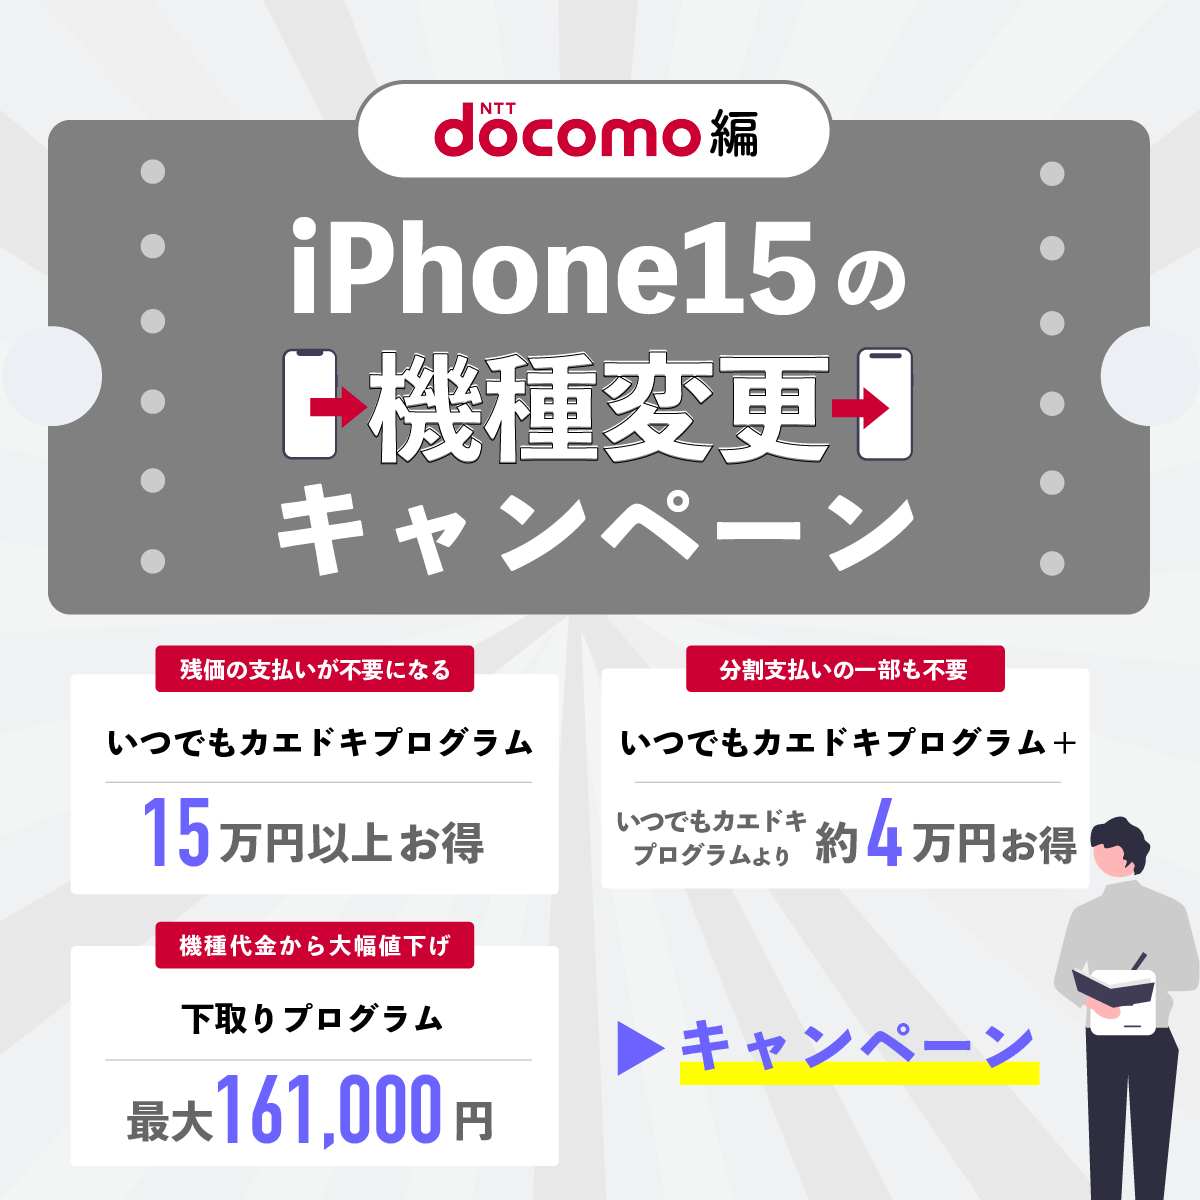 【ドコモ編】iPhone15の機種変更キャンペーン